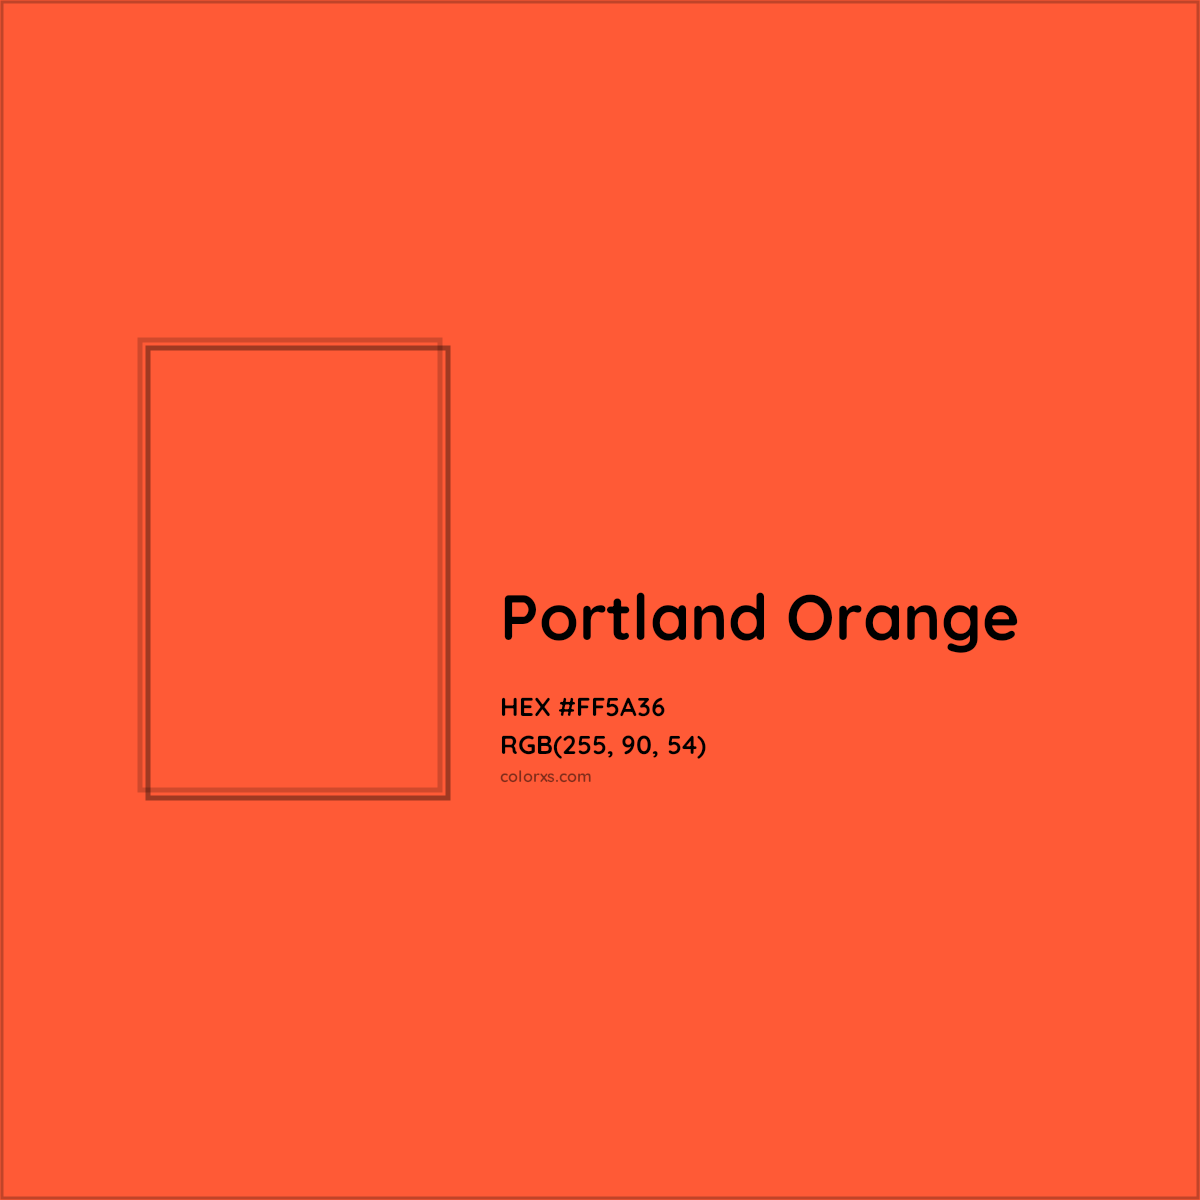 HEX #FF5A36 Portland Orange Color - Color Code